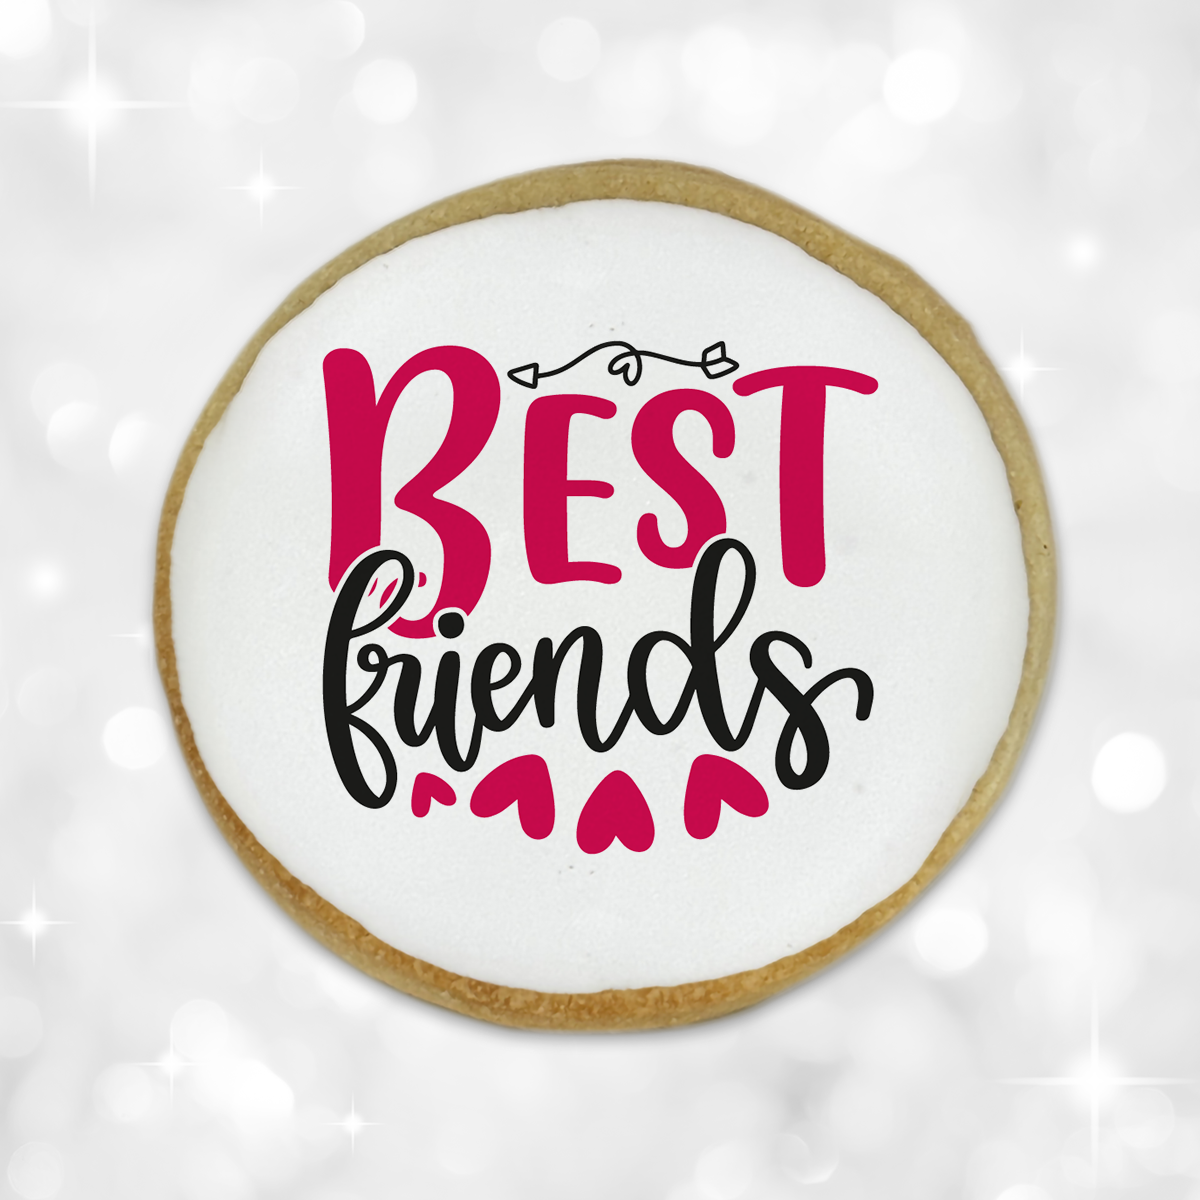 Valentine's Day "Best Friends" Round Cookies